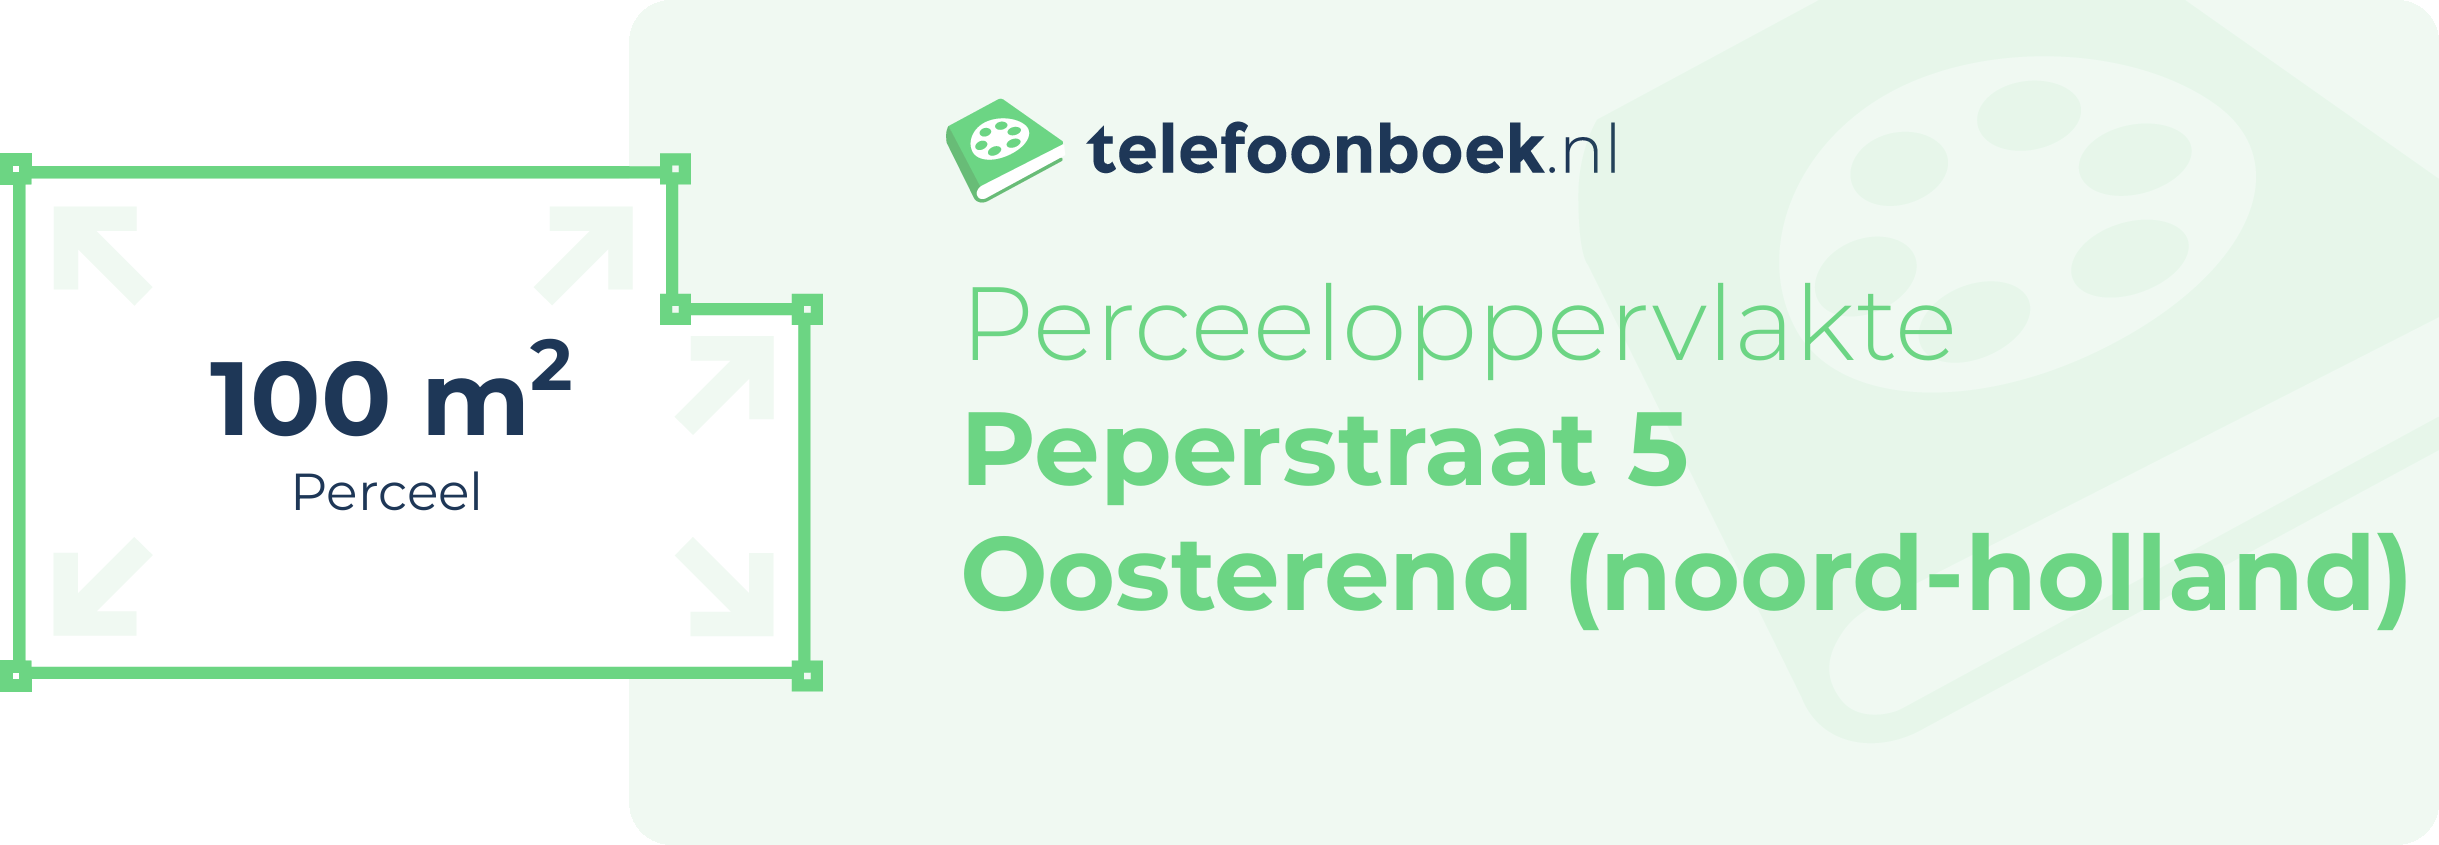 Perceeloppervlakte Peperstraat 5 Oosterend (Noord-Holland)